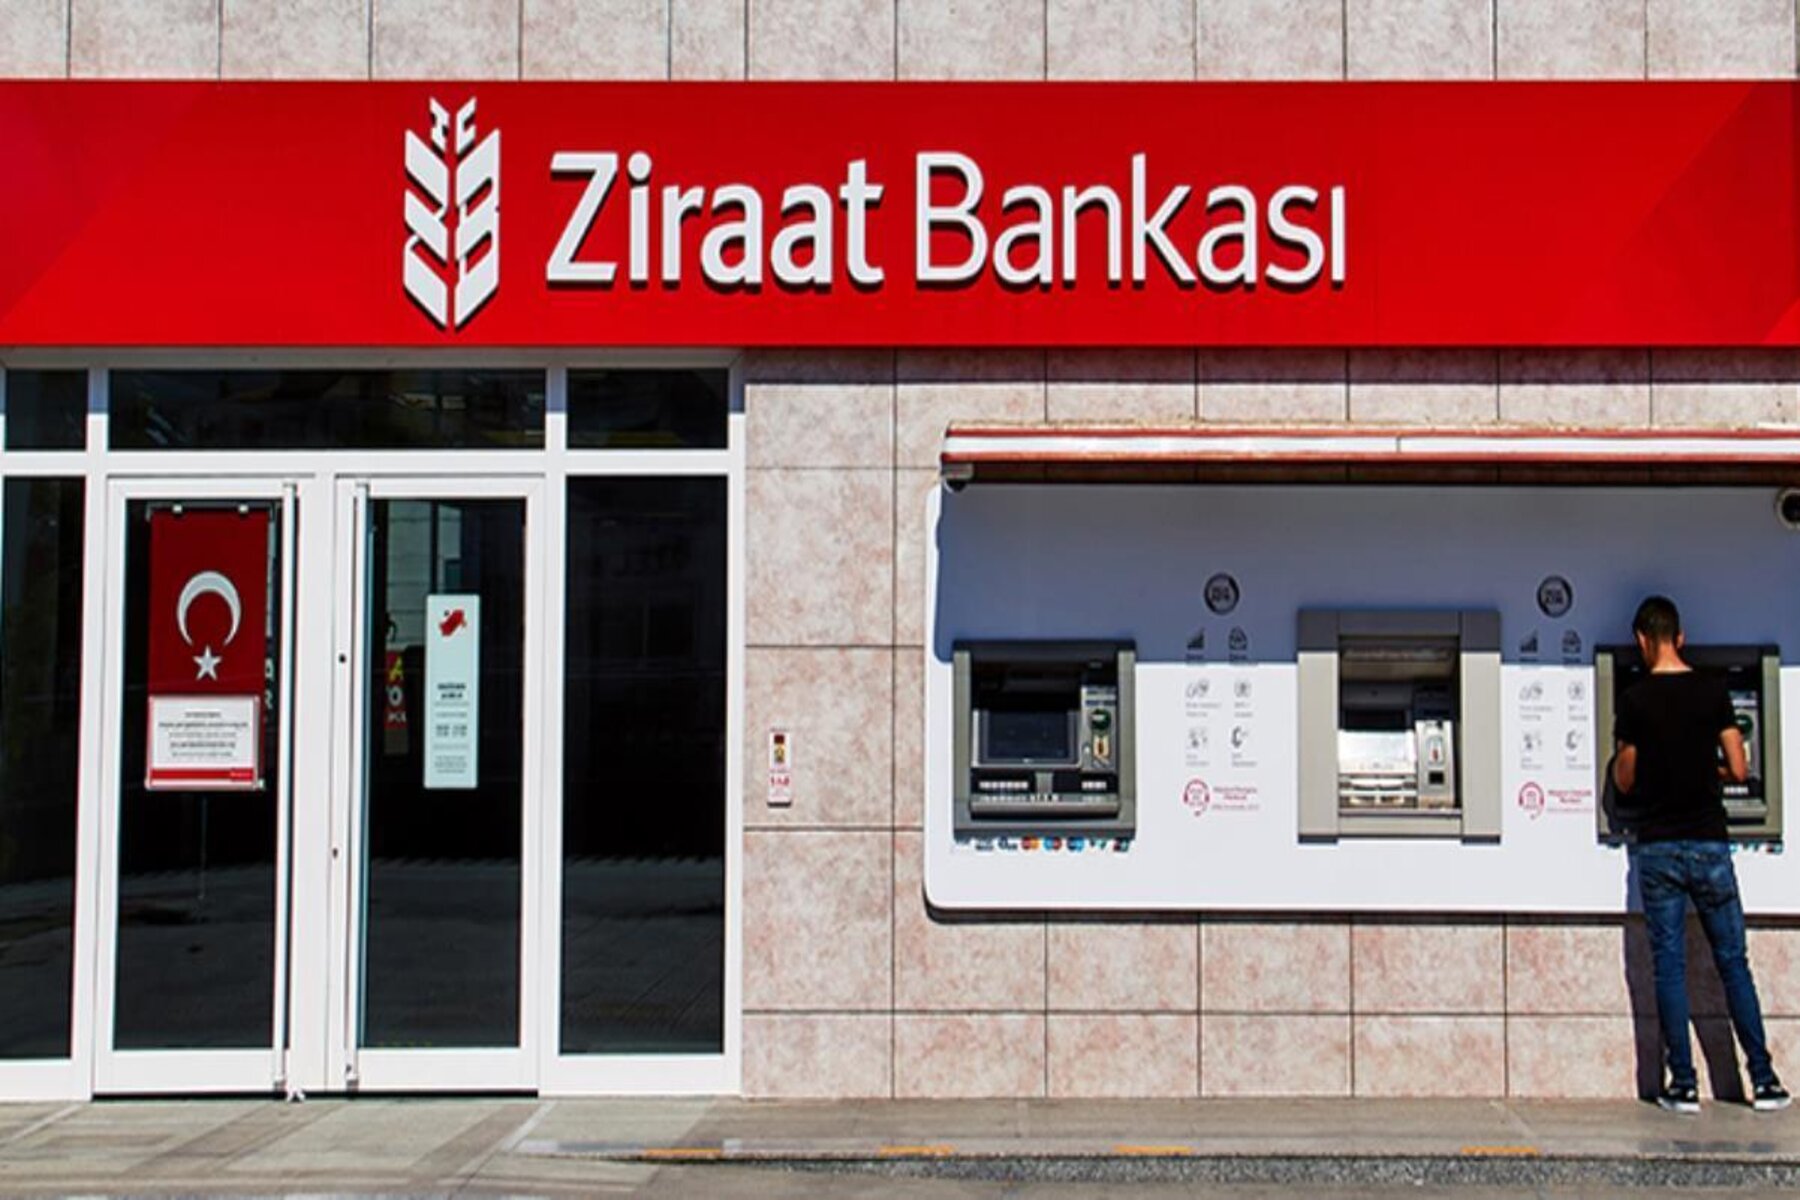  يعد بنك زراعات في تركيا Ziraat Bankasi أحد أشهر البنوك والمصارف وأكثرها شعبية لاسيما بين العرب والسوريين فما هو هذا المصرف وما طريقة وشروط فتح حساب ضمنه؟